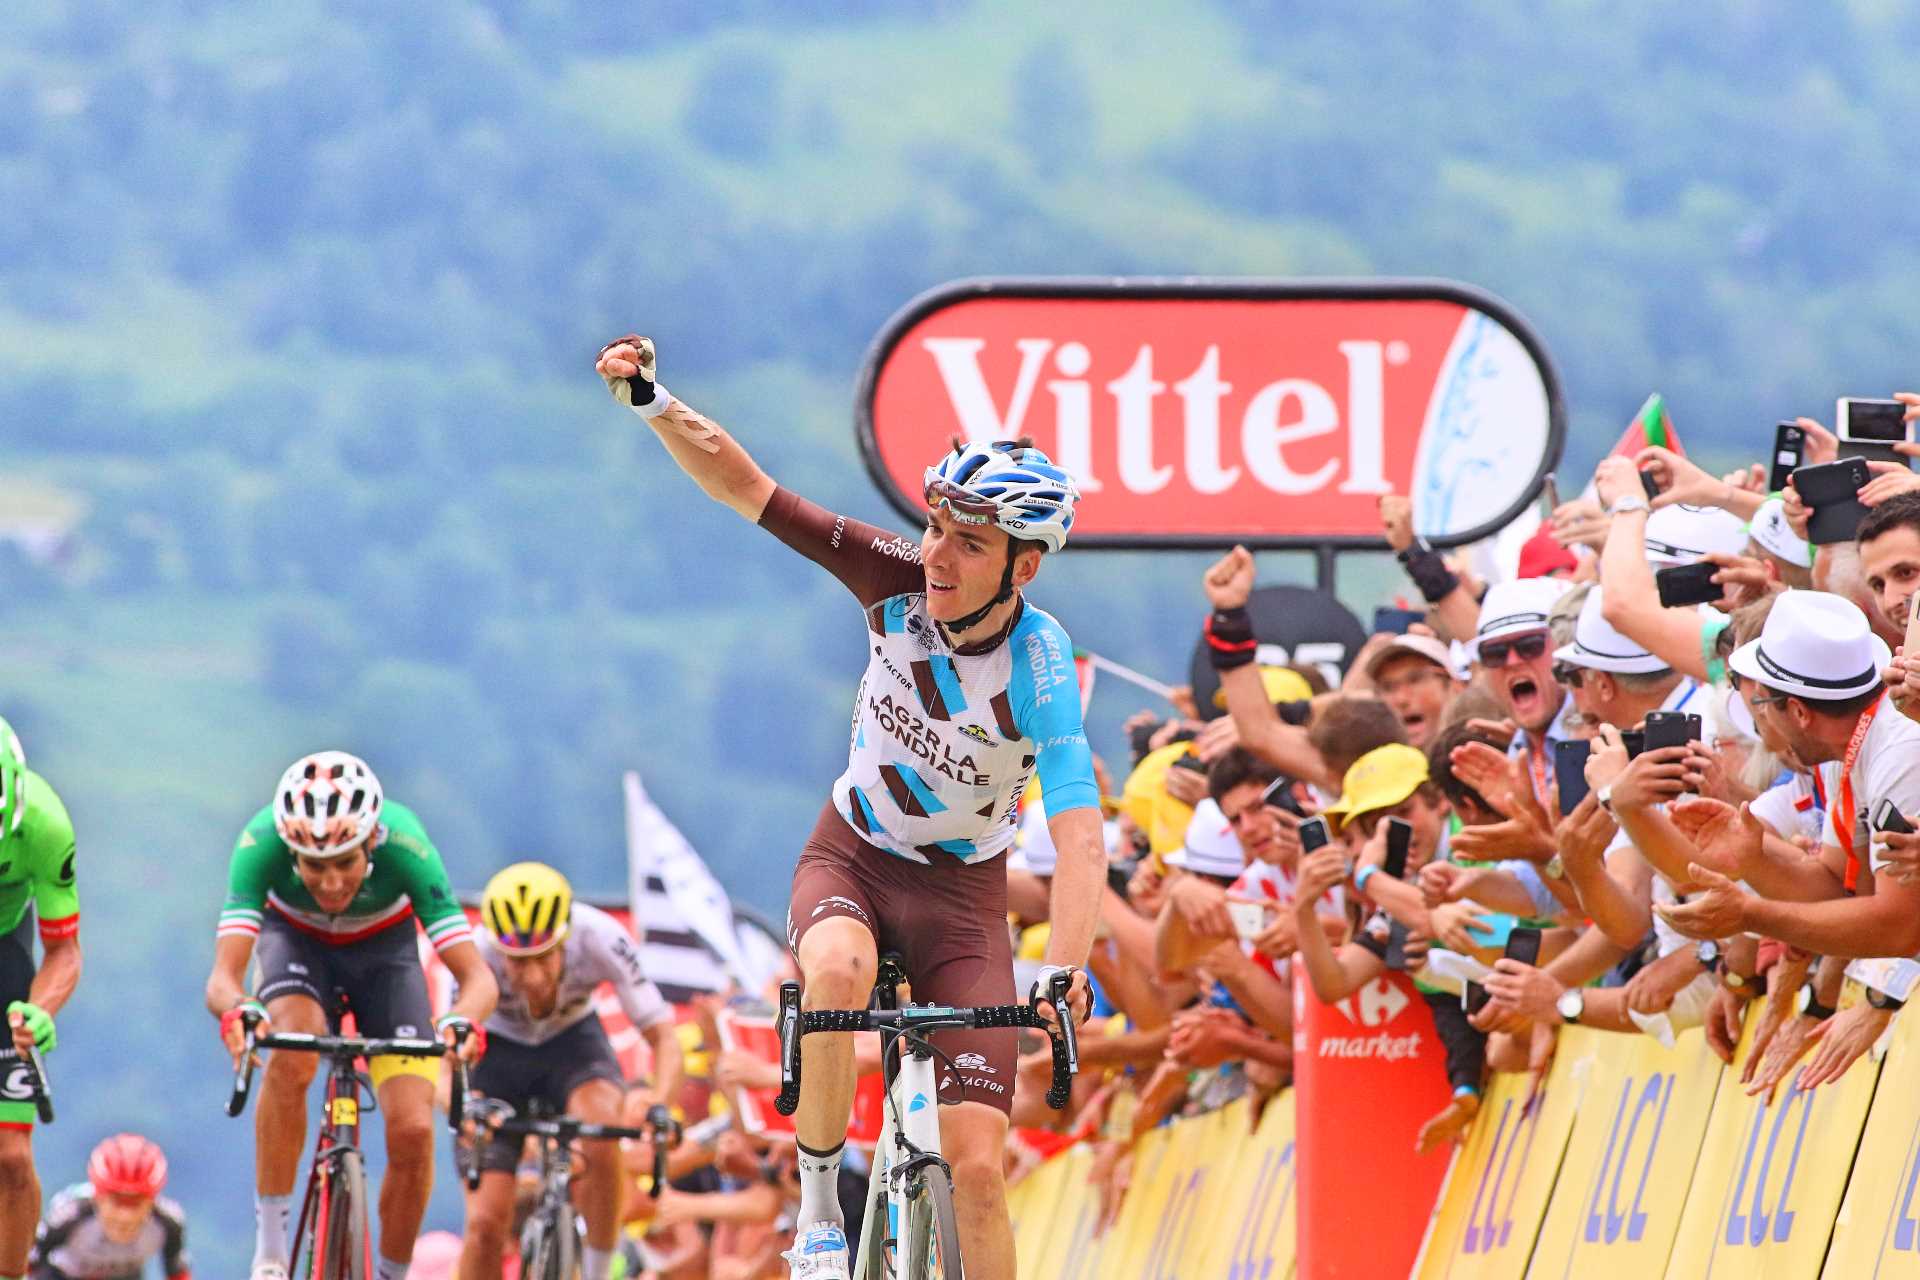 Romain-Bardet-Tour-de-France-2017-Peyragudes-stage-win-pic-Sirotti.jpg